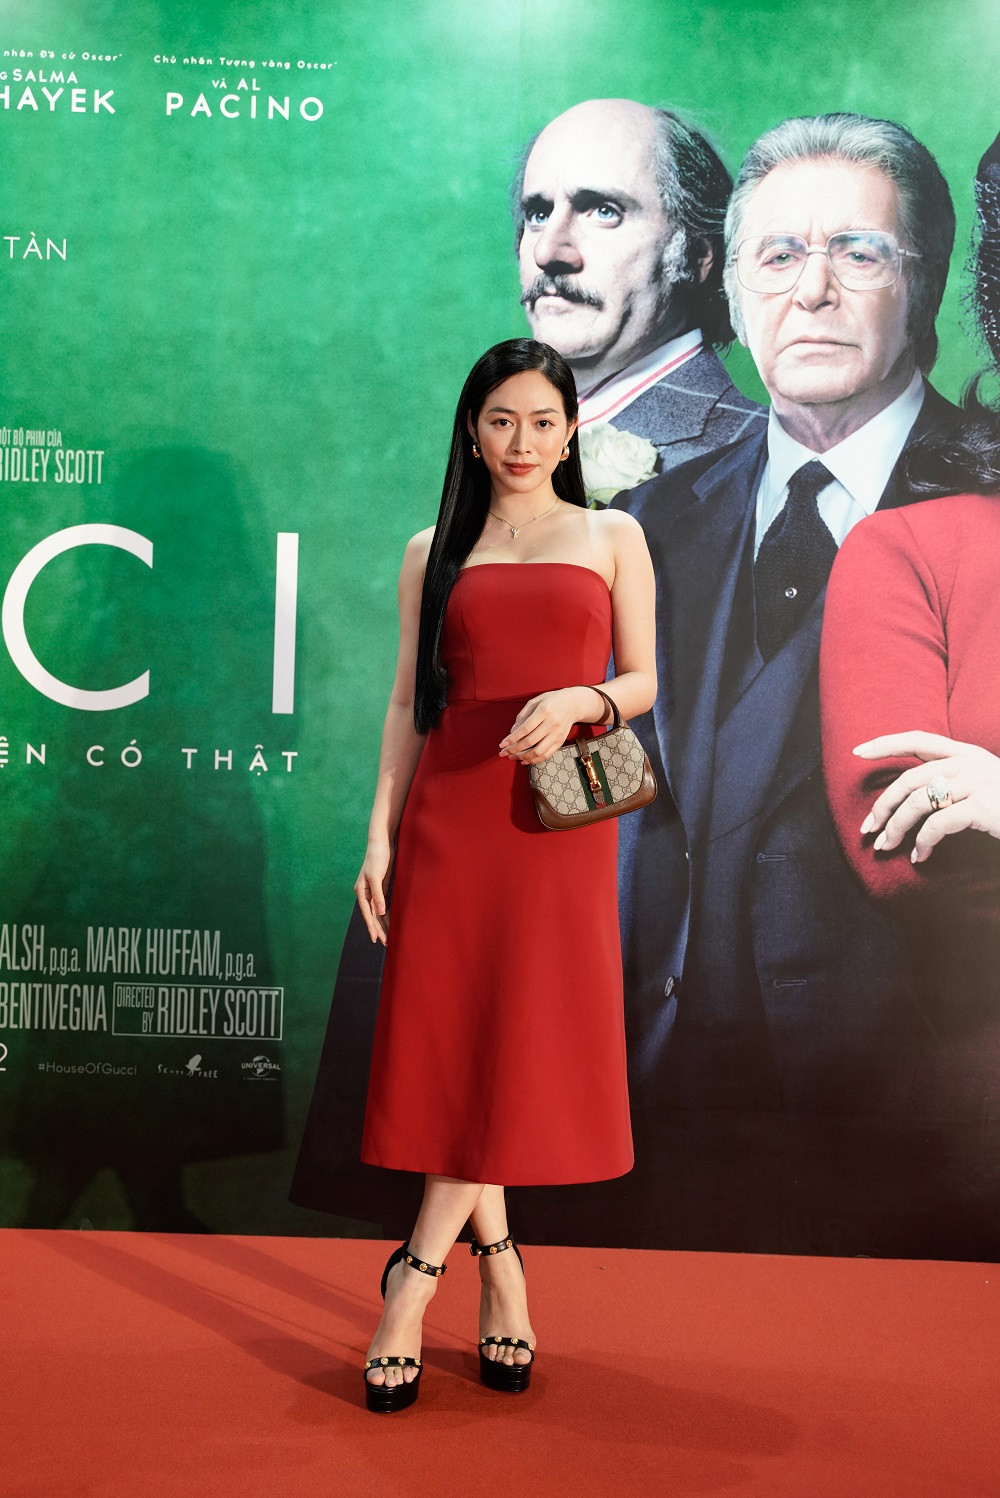 Dàn sao Việt lên đồ 'cực gắt' tại buổi công chiếu phim Gia tộc Gucci - ảnh 1